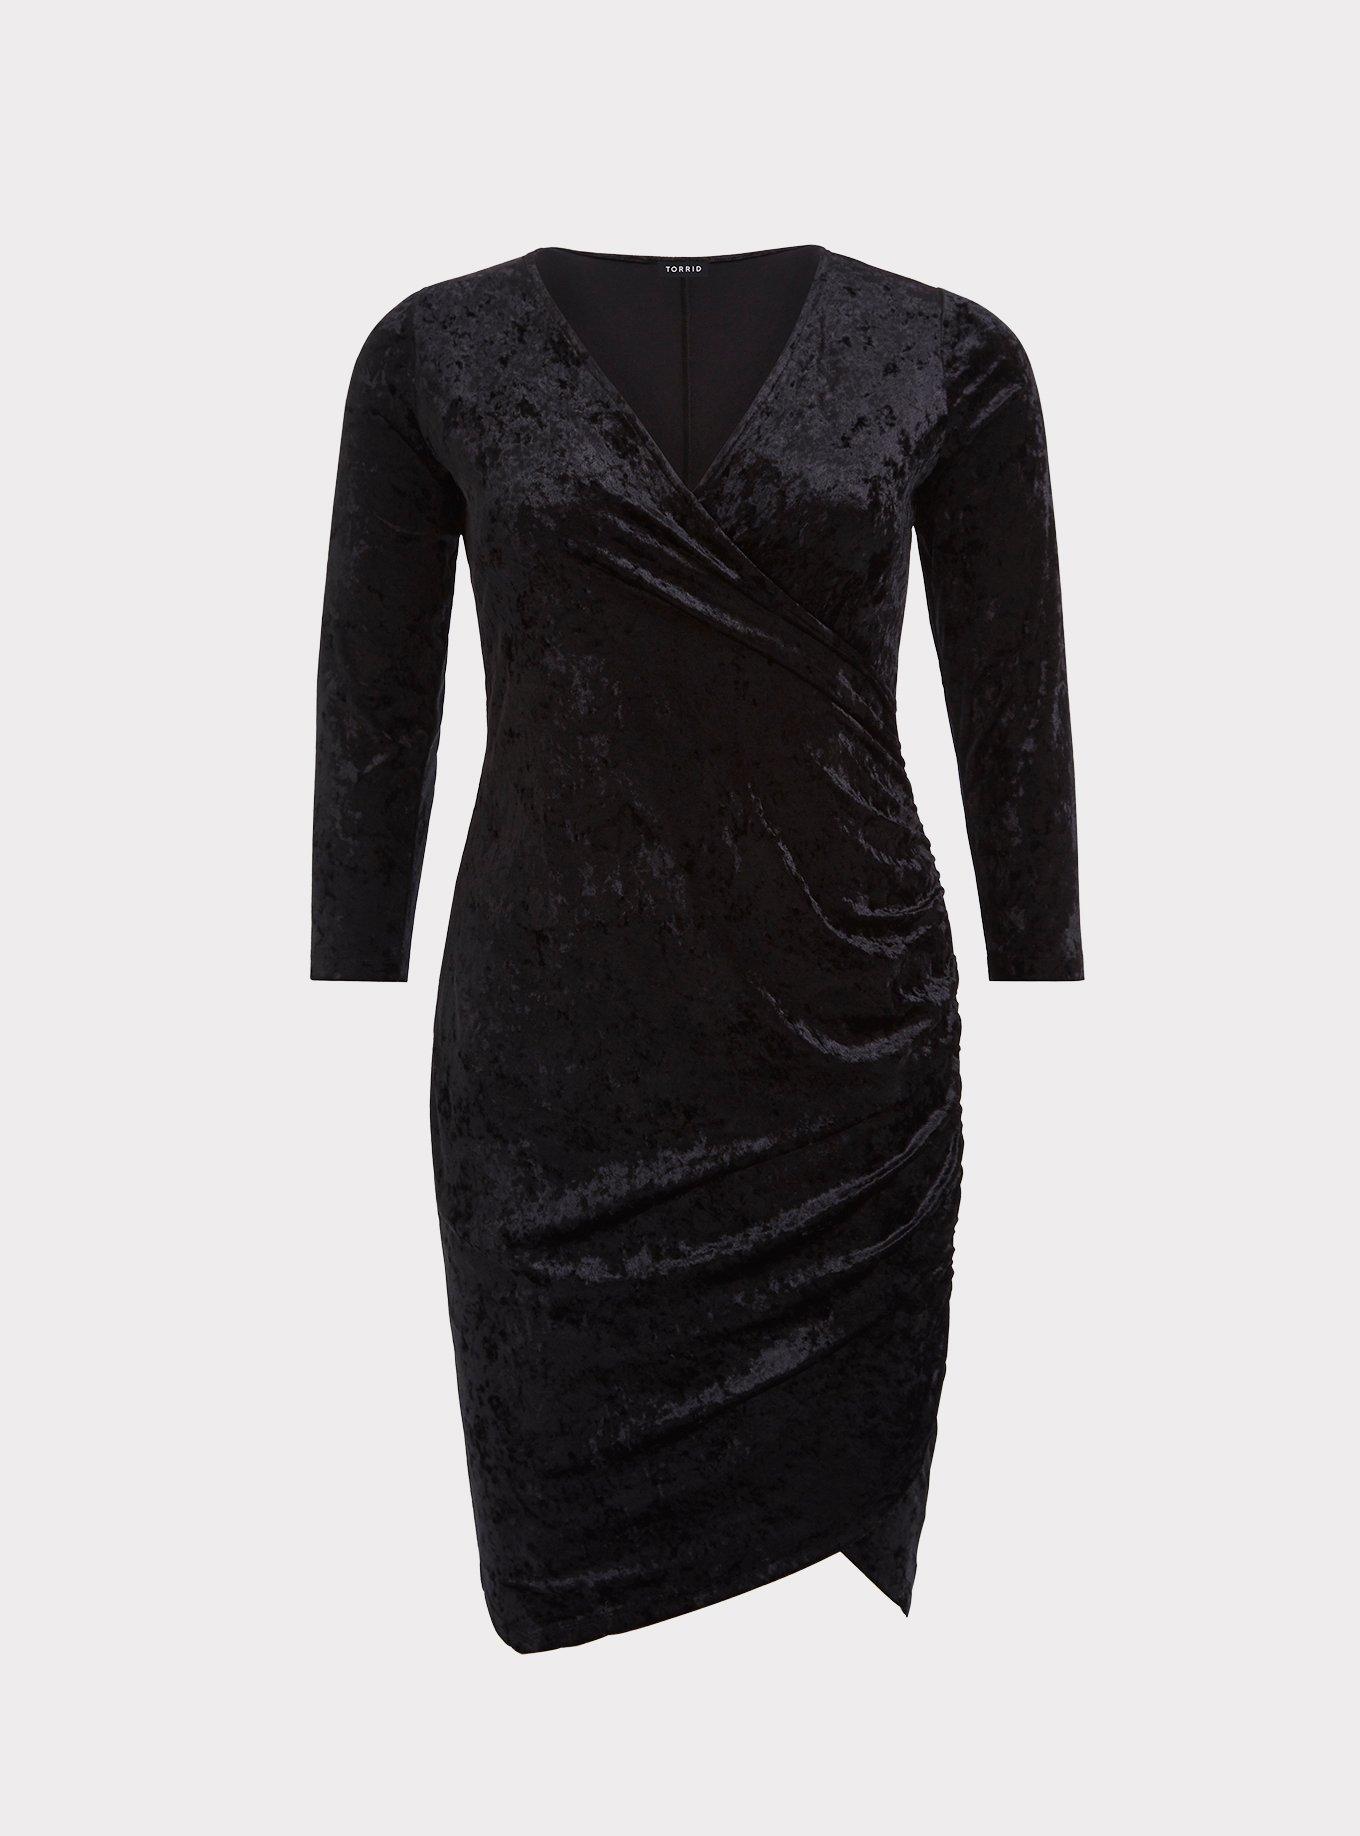 Plus Size - Black Velvet Bodycon Dress - Torrid